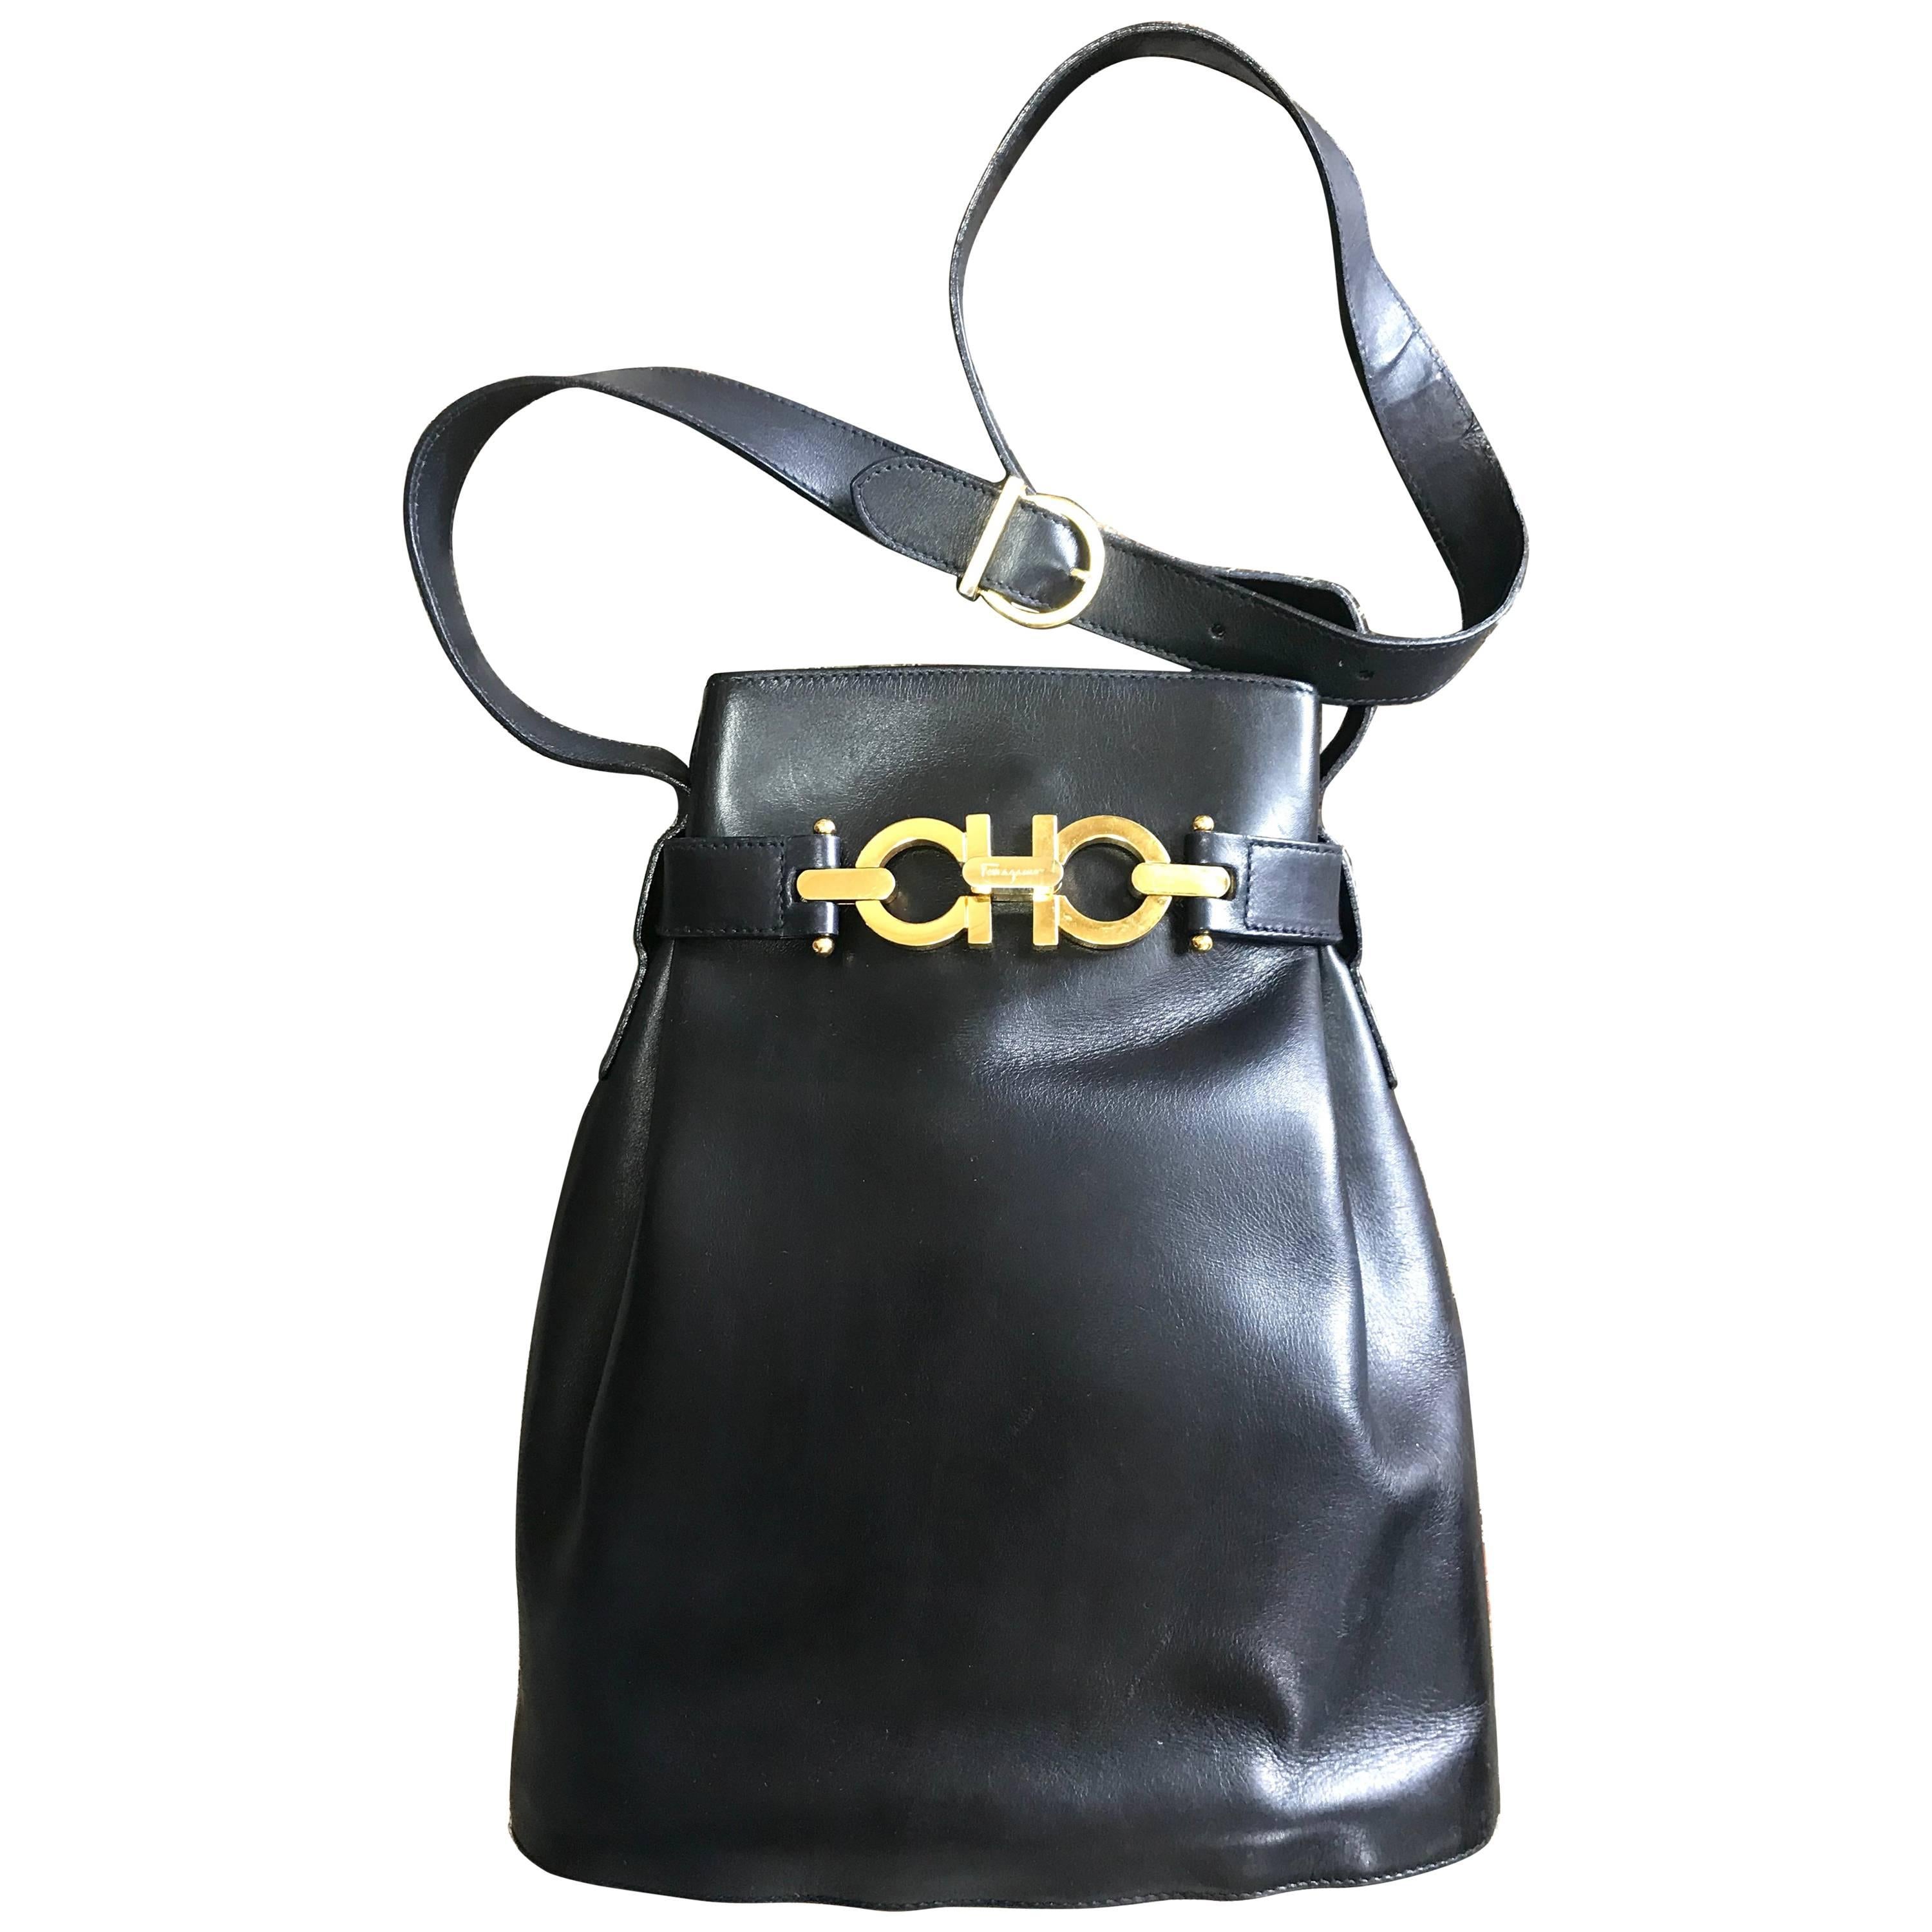 Vintage Salvatore Ferragamo navy leather hobo shoulder bag with gancini motif. For Sale